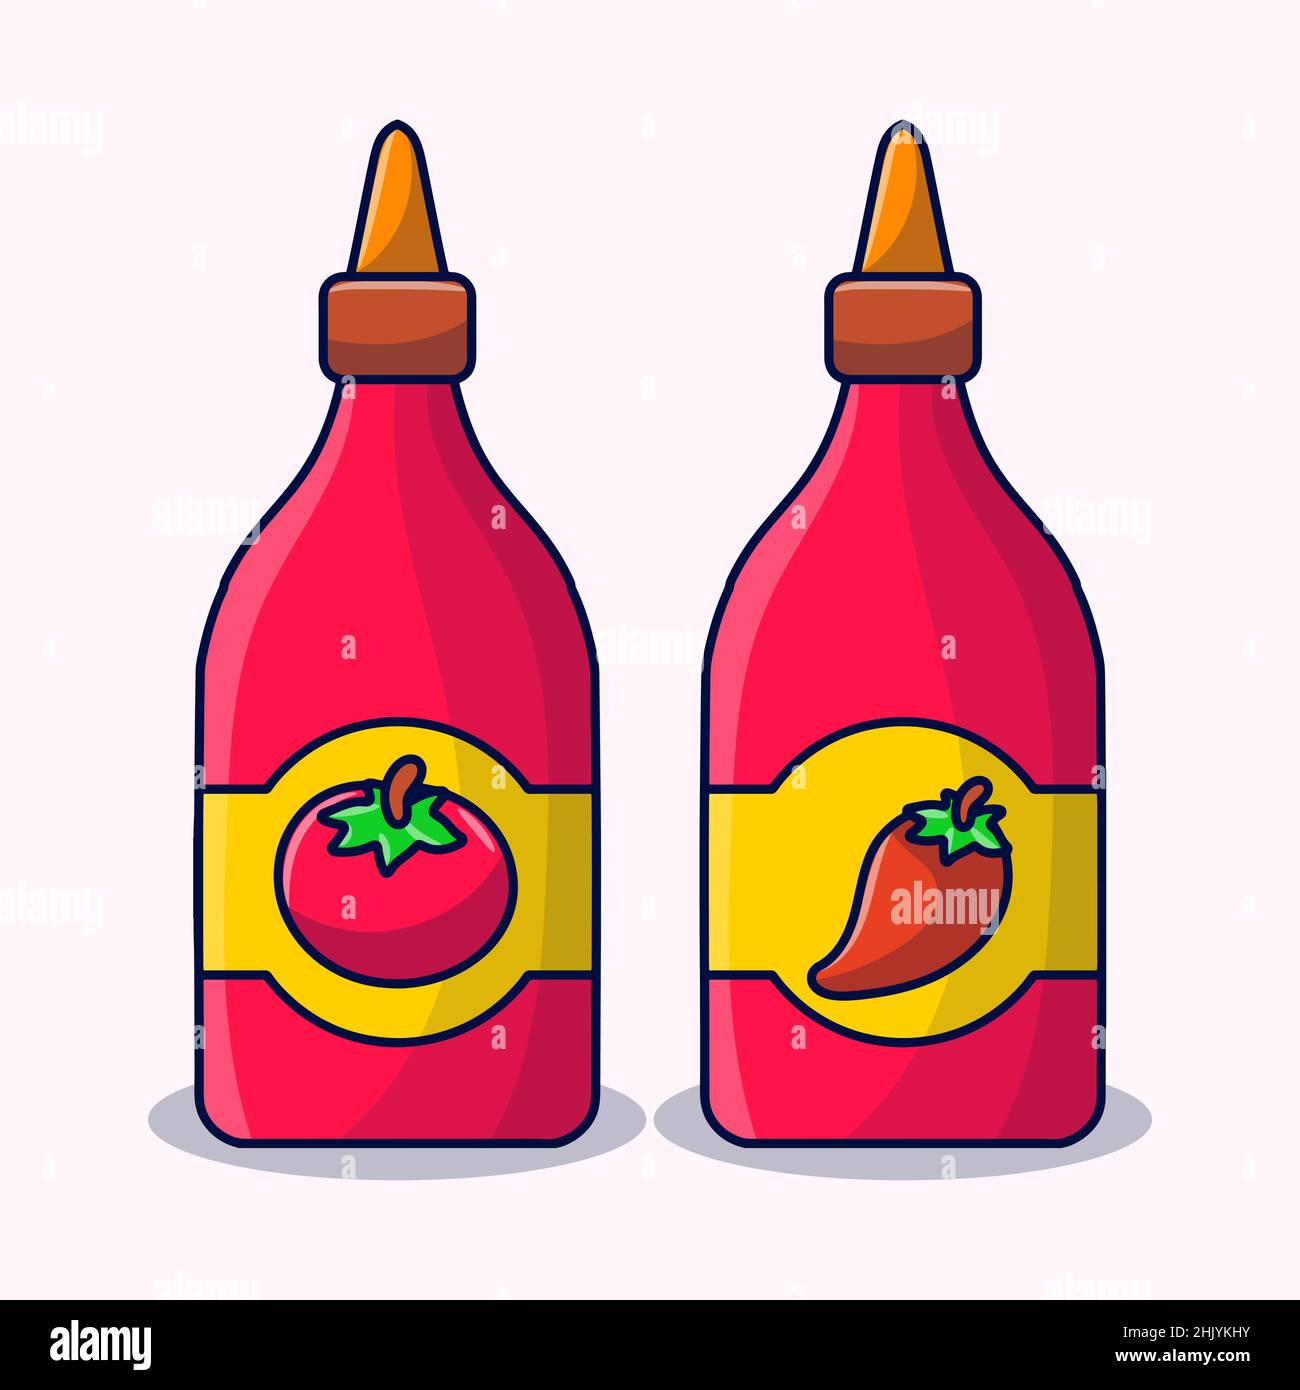 Abbildung mit Tomaten- und Chilisauce und farbigem, handgezeichneten Doodle-Stil Stock Vektor